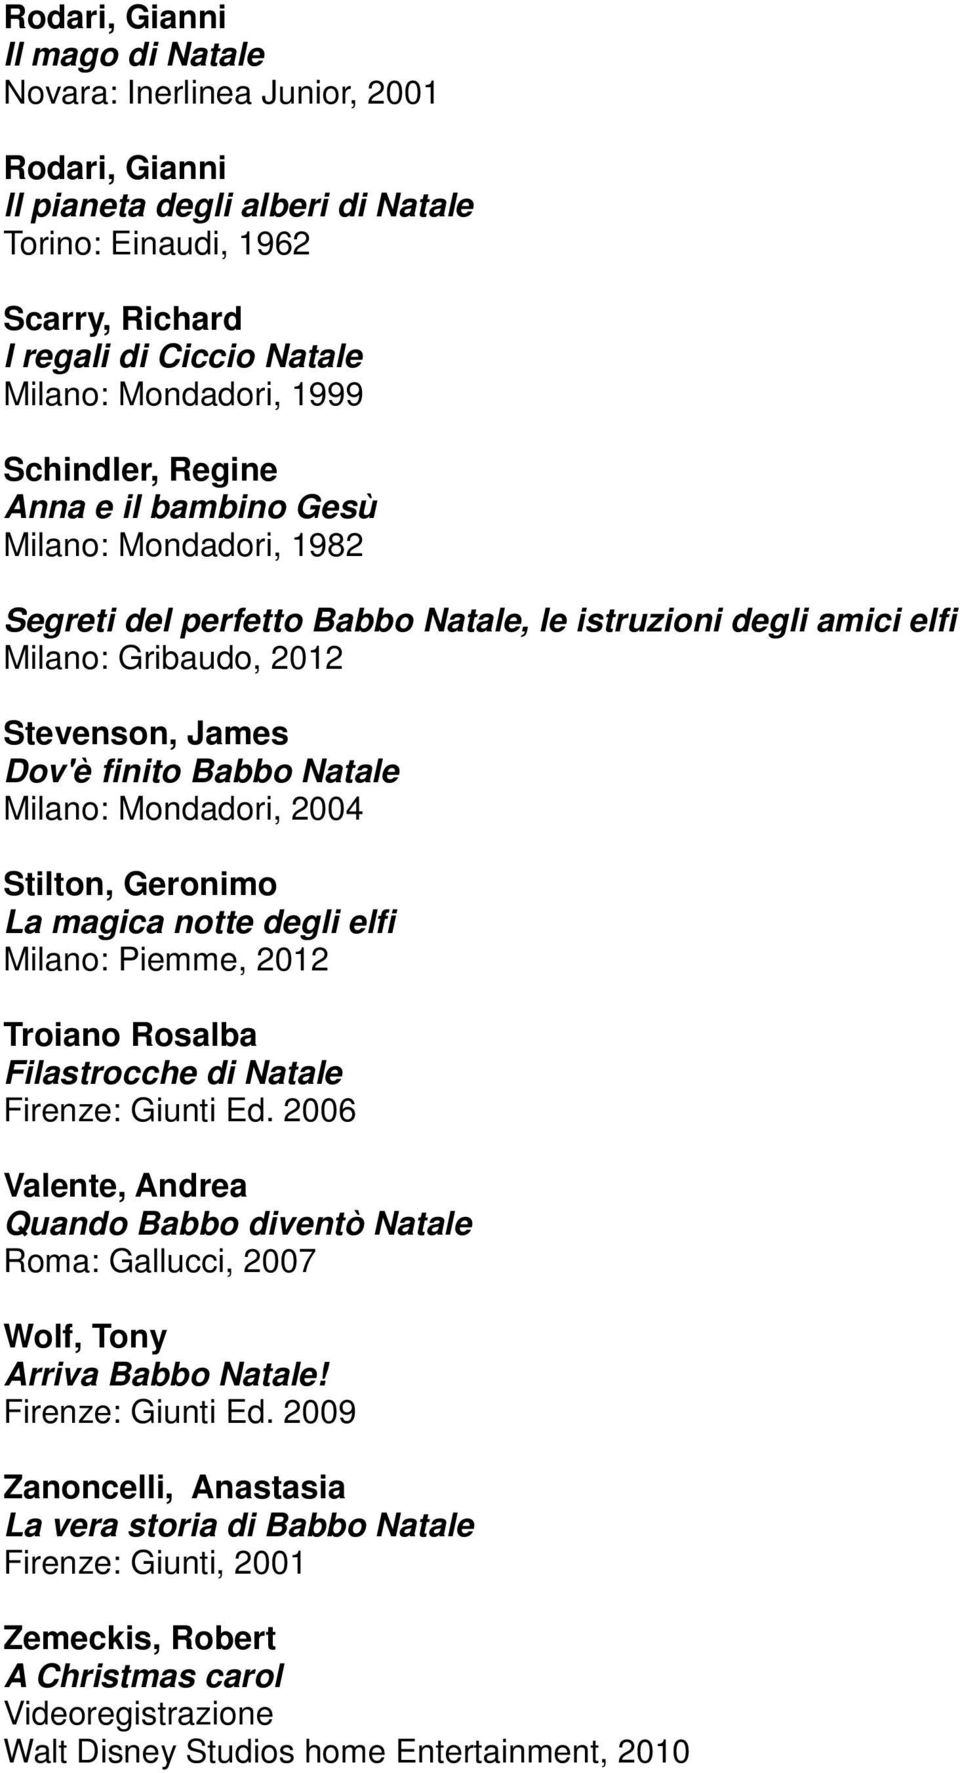 Natale Milano: Mondadori, 2004 Stilton, Geronimo La magica notte degli elfi Milano: Piemme, 2012 Troiano Rosalba Filastrocche di Natale Firenze: Giunti Ed.